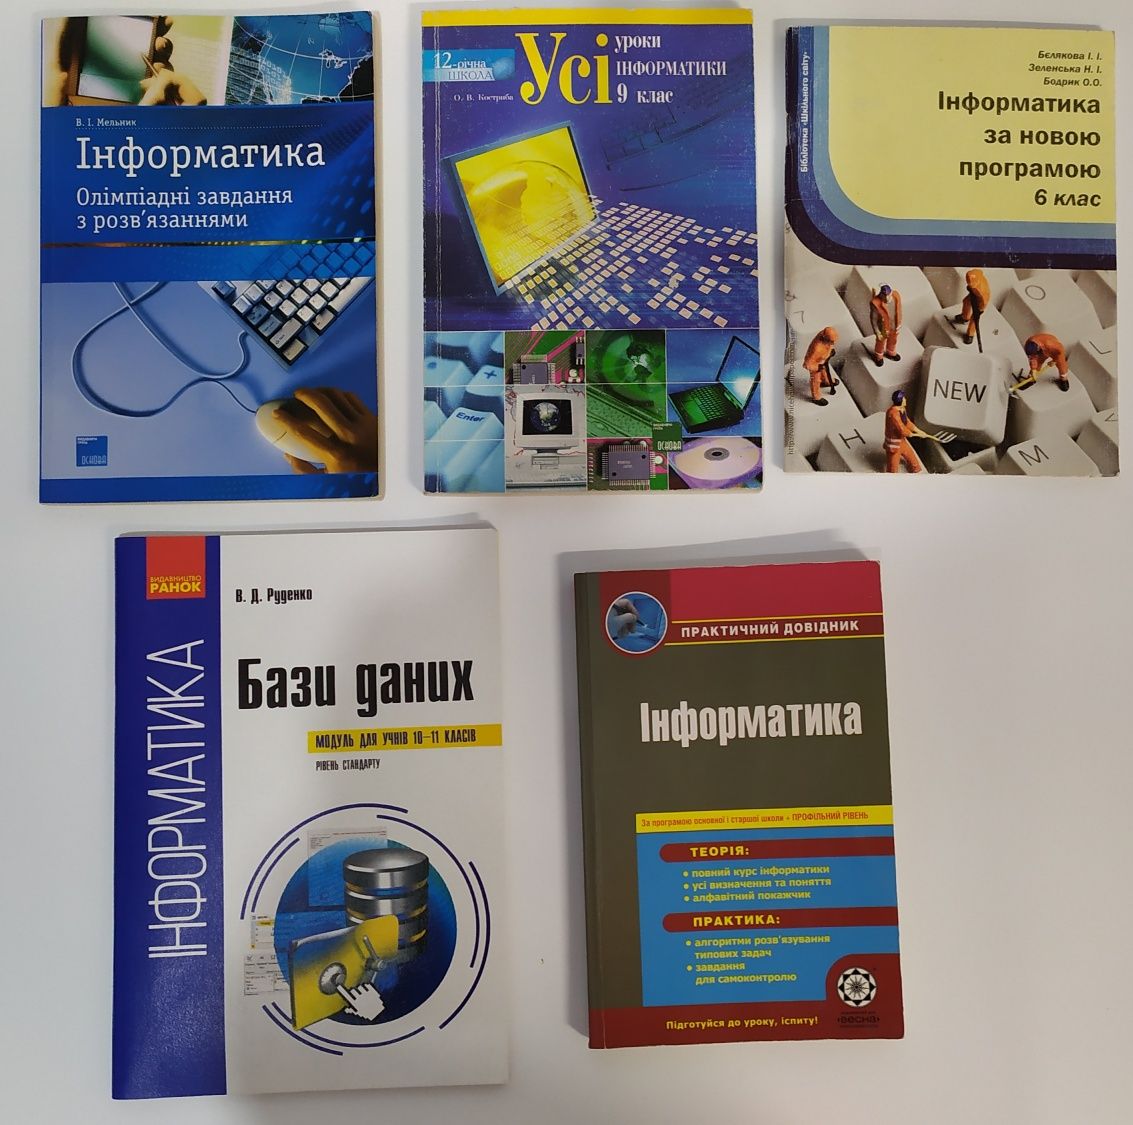 Продам книги з програмування, саморозвитку та методичну літературу